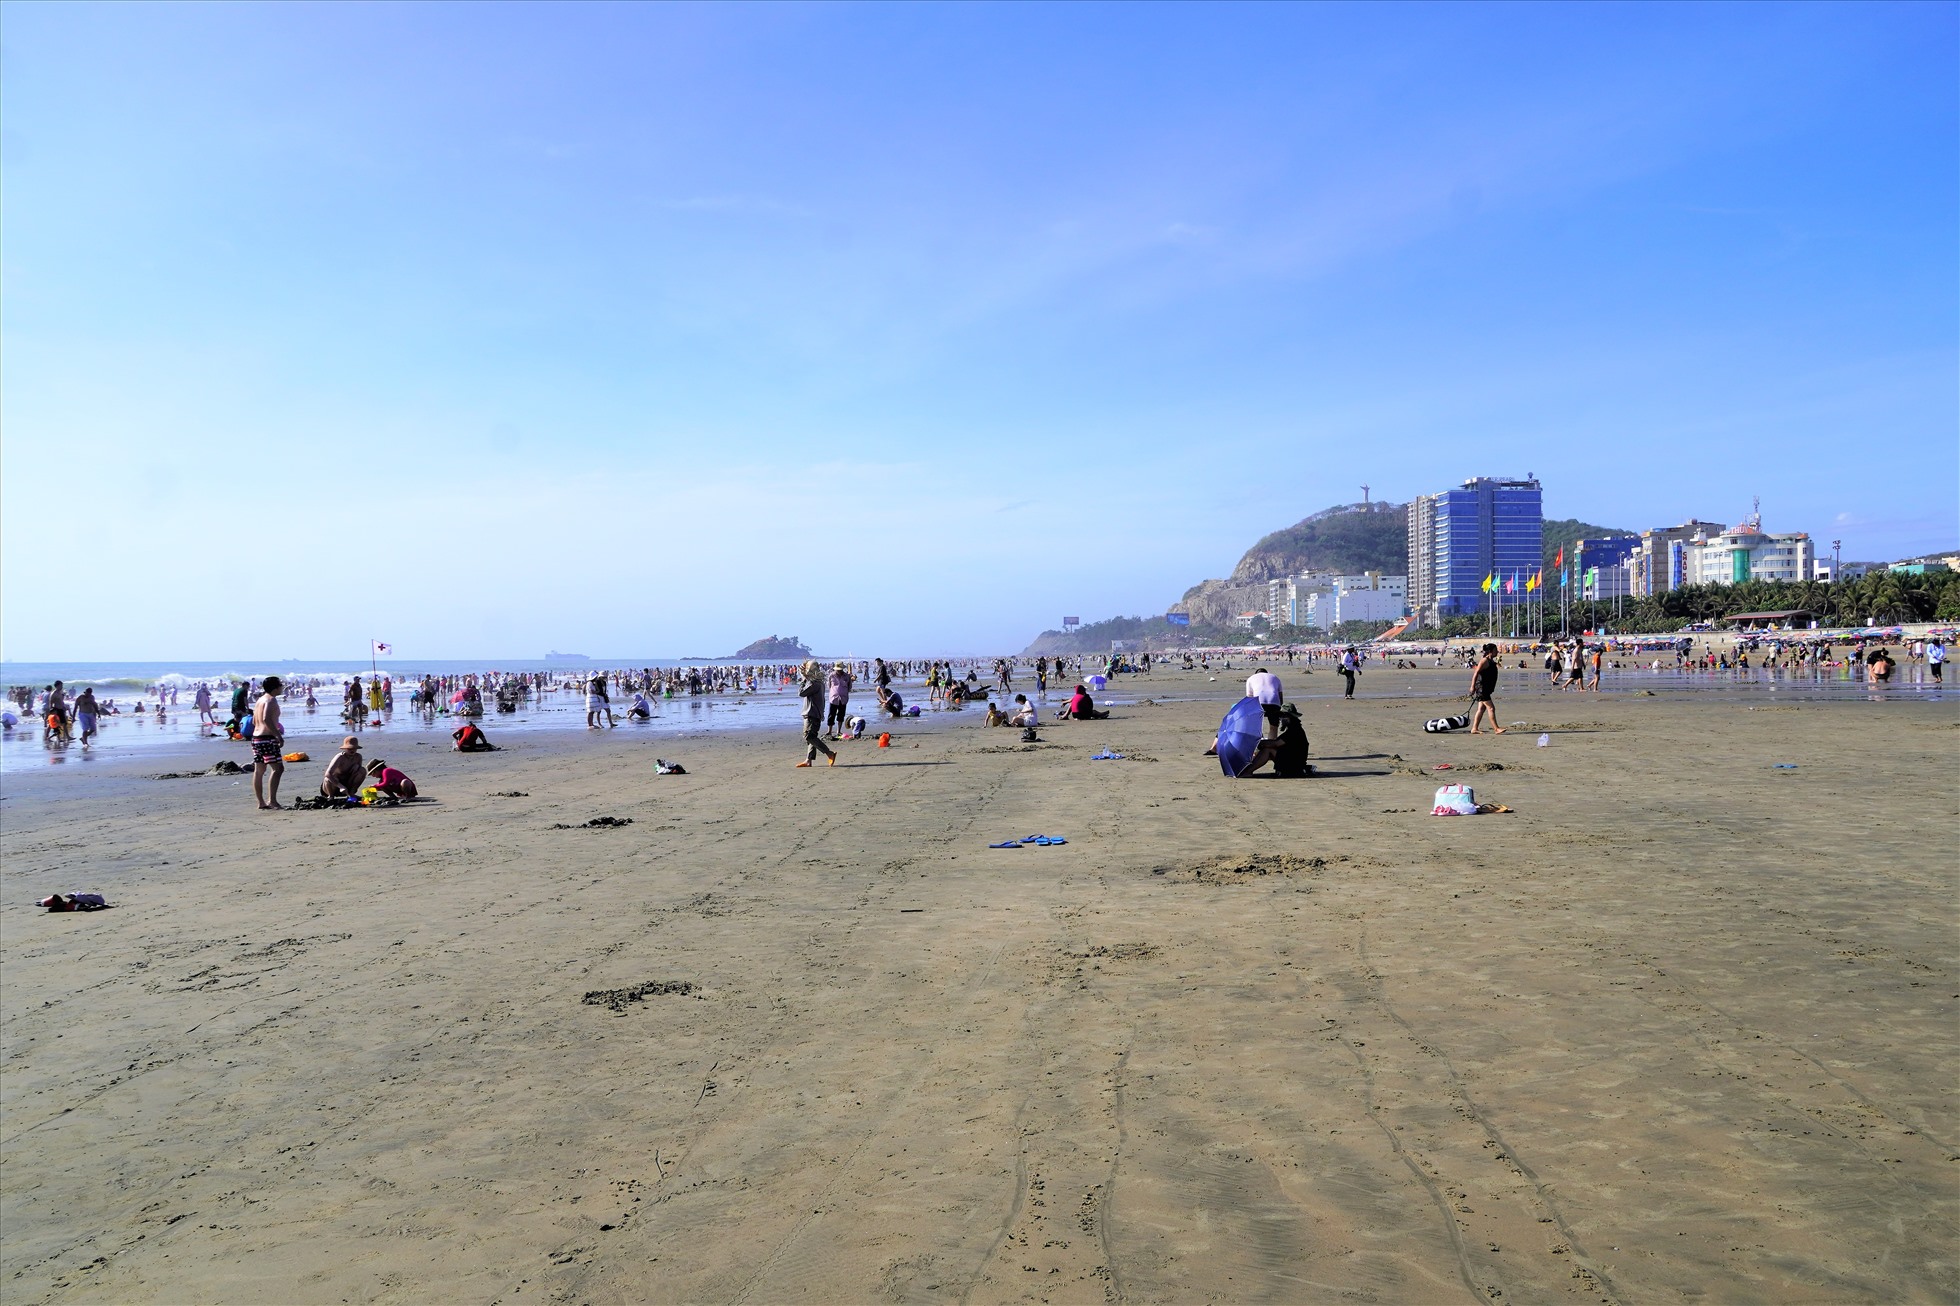 Thủy triều rút sâu tạo nên bãi cát khá rộng, nên từng nhóm du khách có không gian khá thoải mái, cách biệt, không quá chen chúc như trong chiều mùng 2 Tết. Ảnh: Thành An